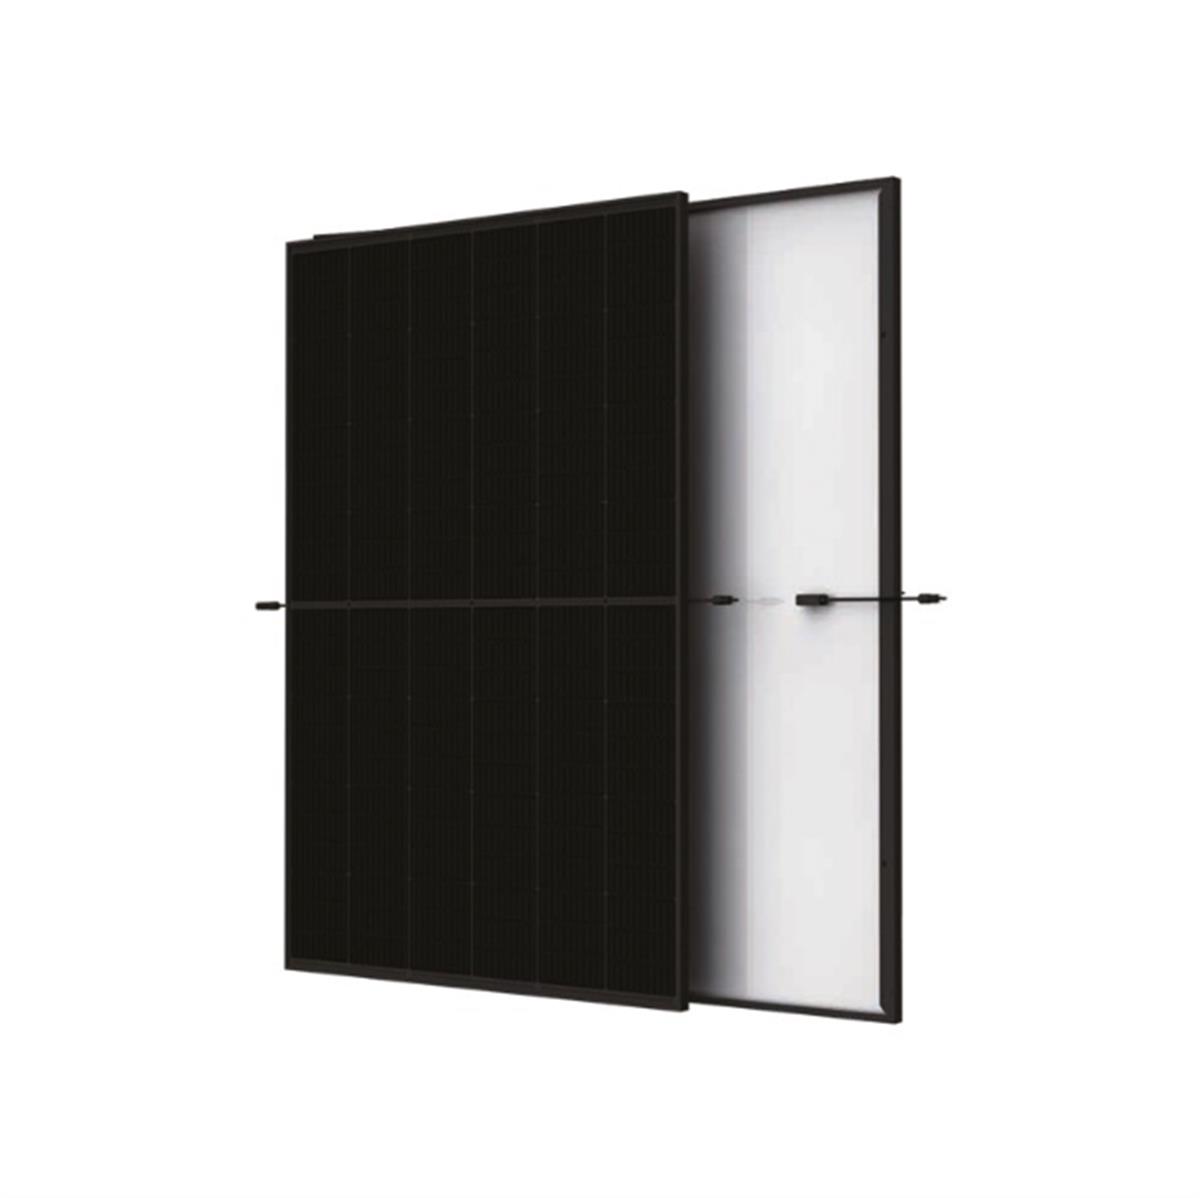 Trina solar Vertex S+ 440W glass-glass